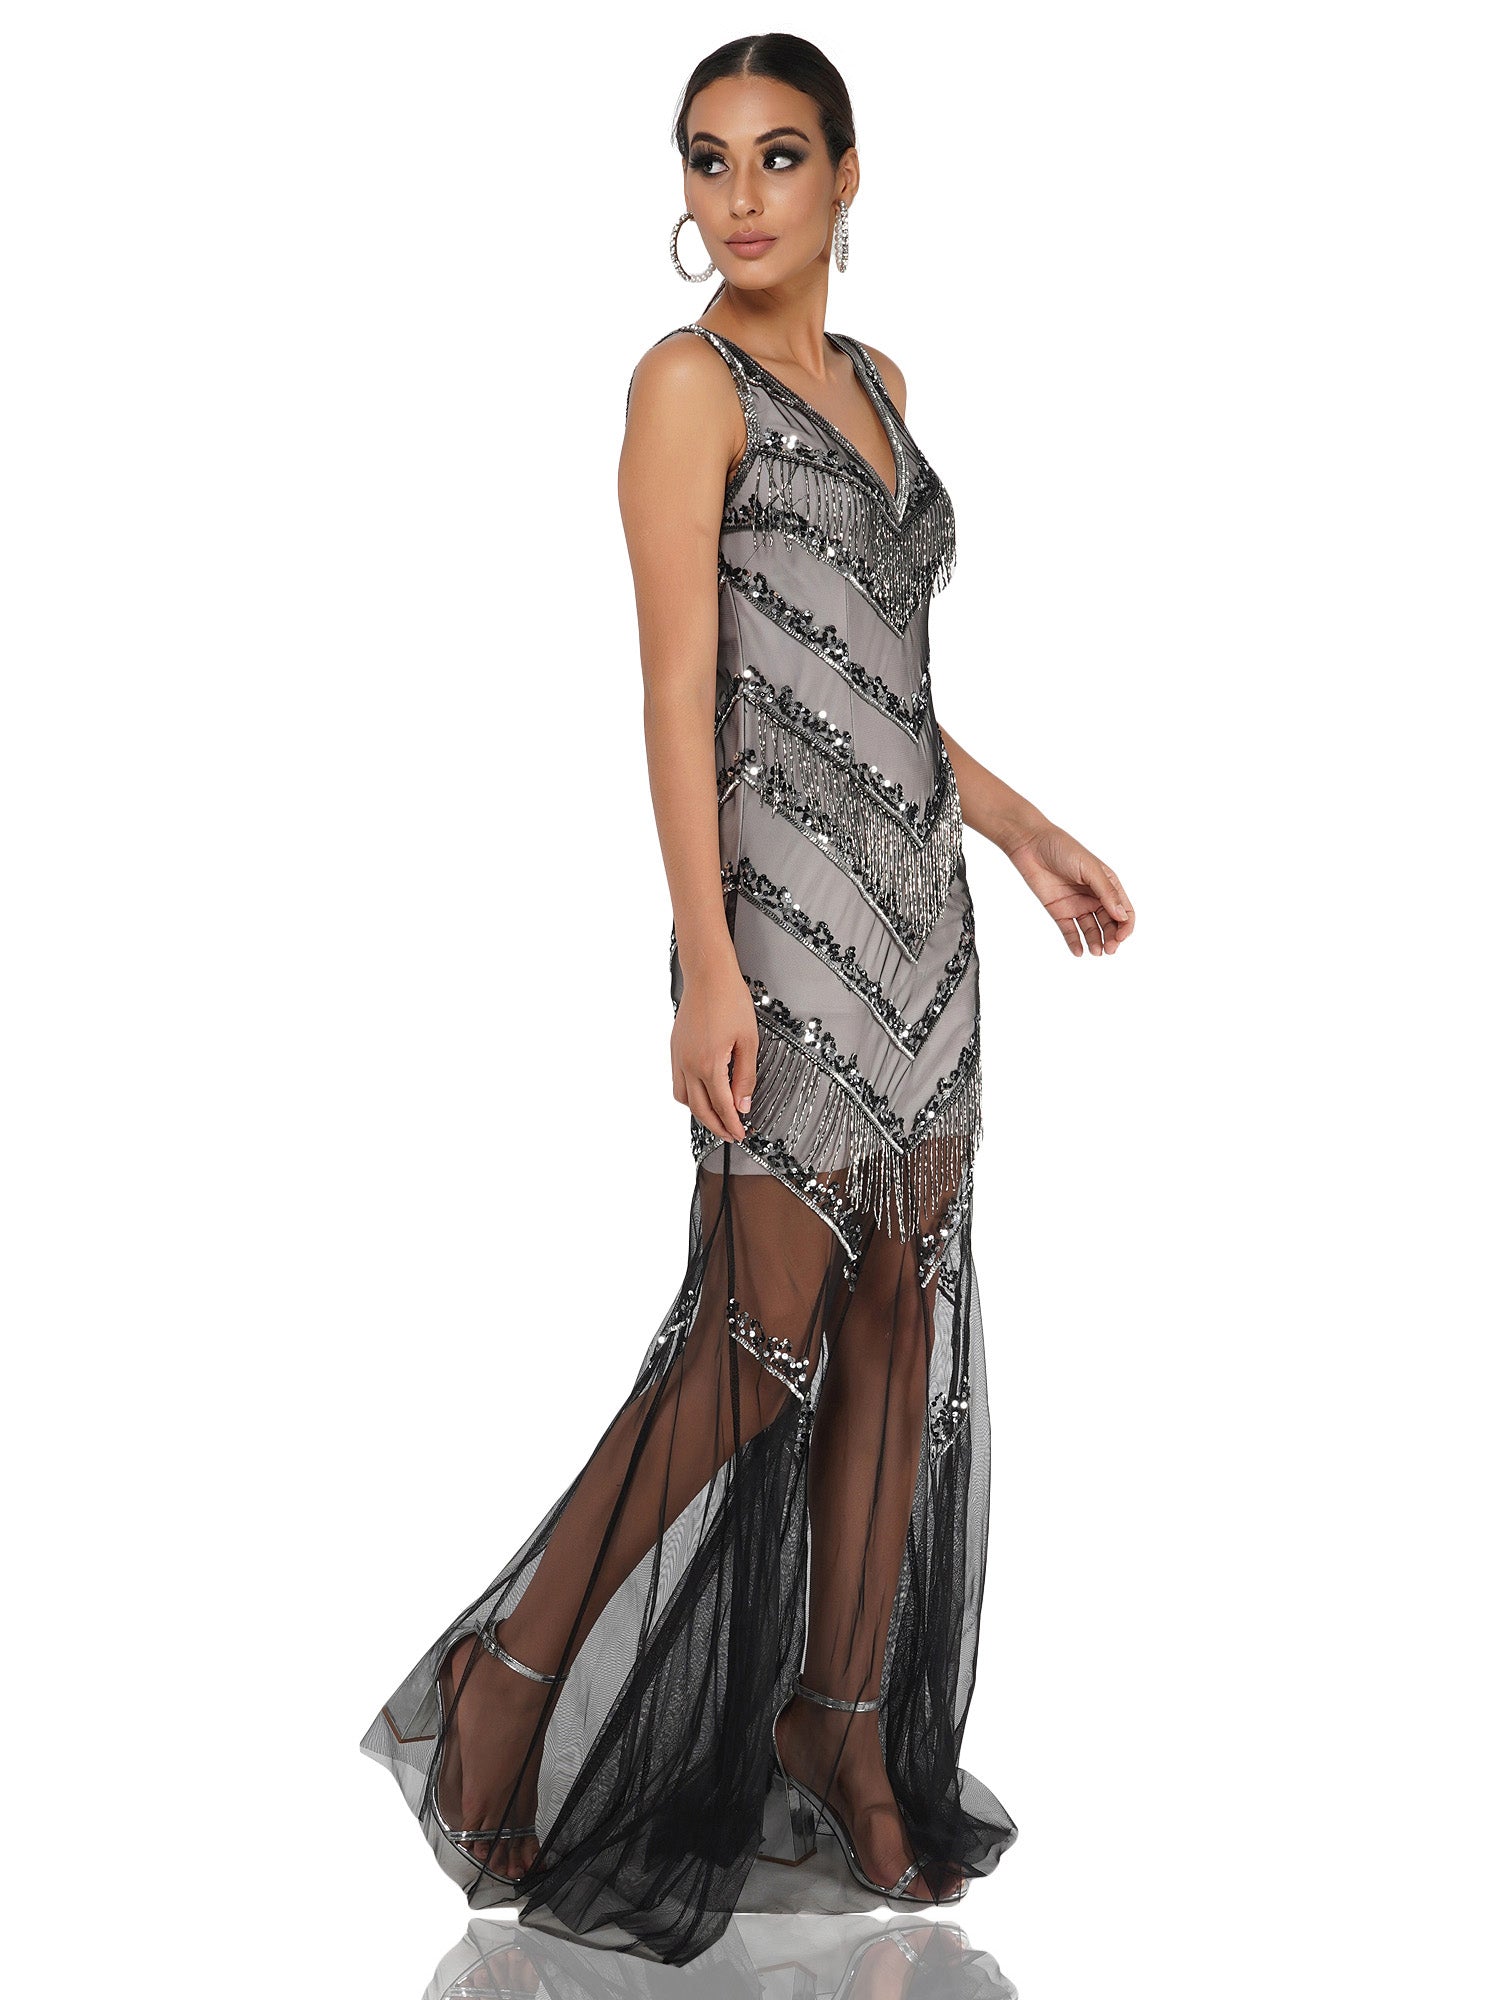 Attic Salt Embellished Black Tulle Gown